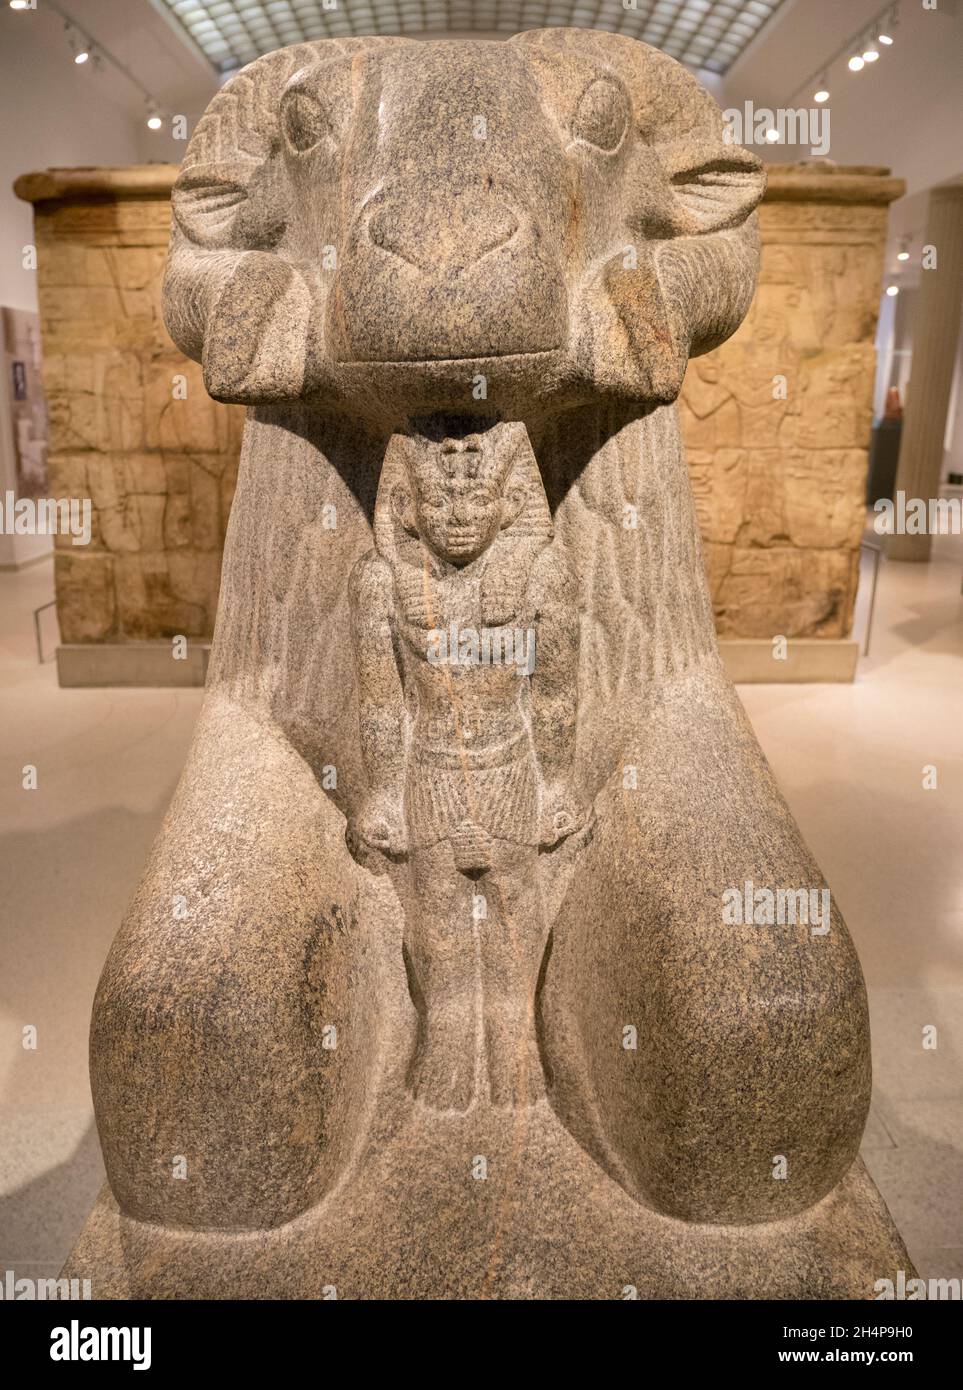 Skulptur des ägyptischen gottes Amun, mit Widder, ausgestellt im Ashmolean Museum. Amun ist der altägyptische gott der Sonne und der Luft und einer der m Stockfoto